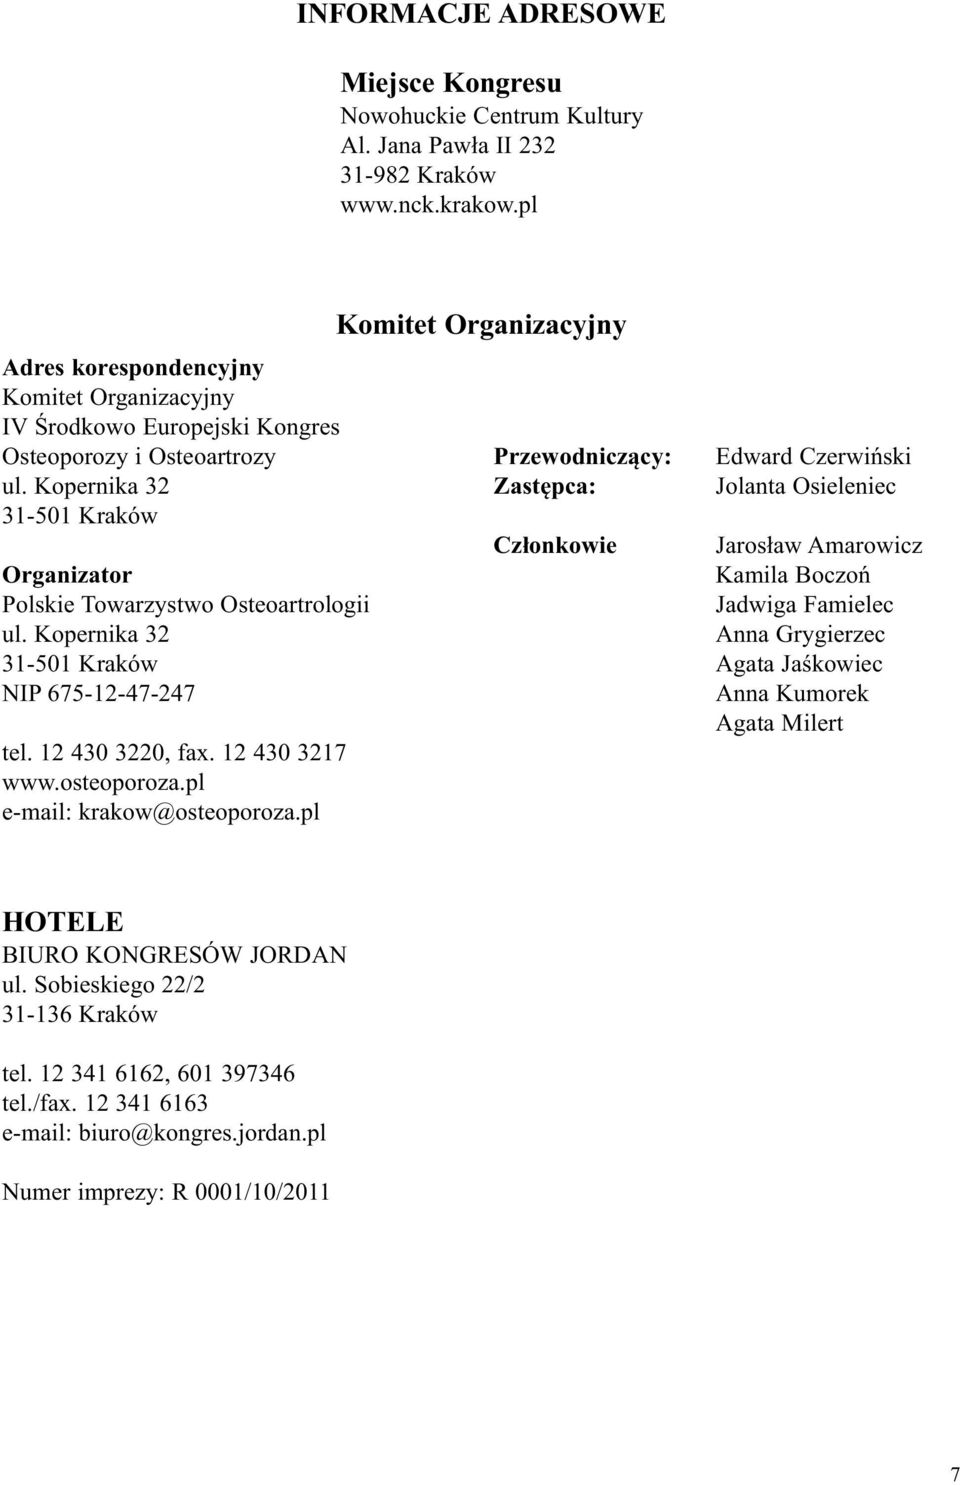 Kopernika 32 Zastępca: 31-501 Kraków Członkowie Organizator Polskie Towarzystwo Osteoartrologii ul. Kopernika 32 31-501 Kraków NIP 675-12-47-247 tel. 12 430 3220, fax. 12 430 3217 www.osteoporoza.